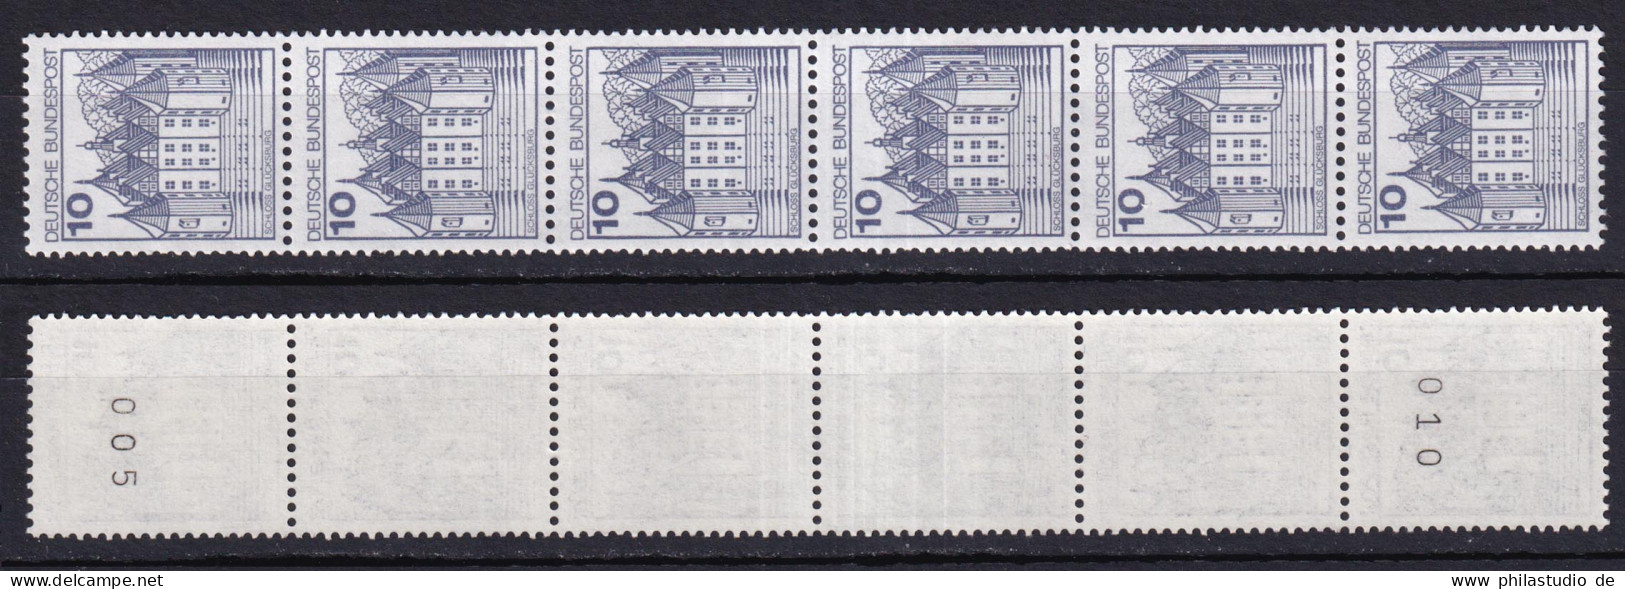 Bund 913 A RM 6er Streifen Burgen+Schlösser 10 Pf Postfrisch Neue Floureszenz - Rolstempels